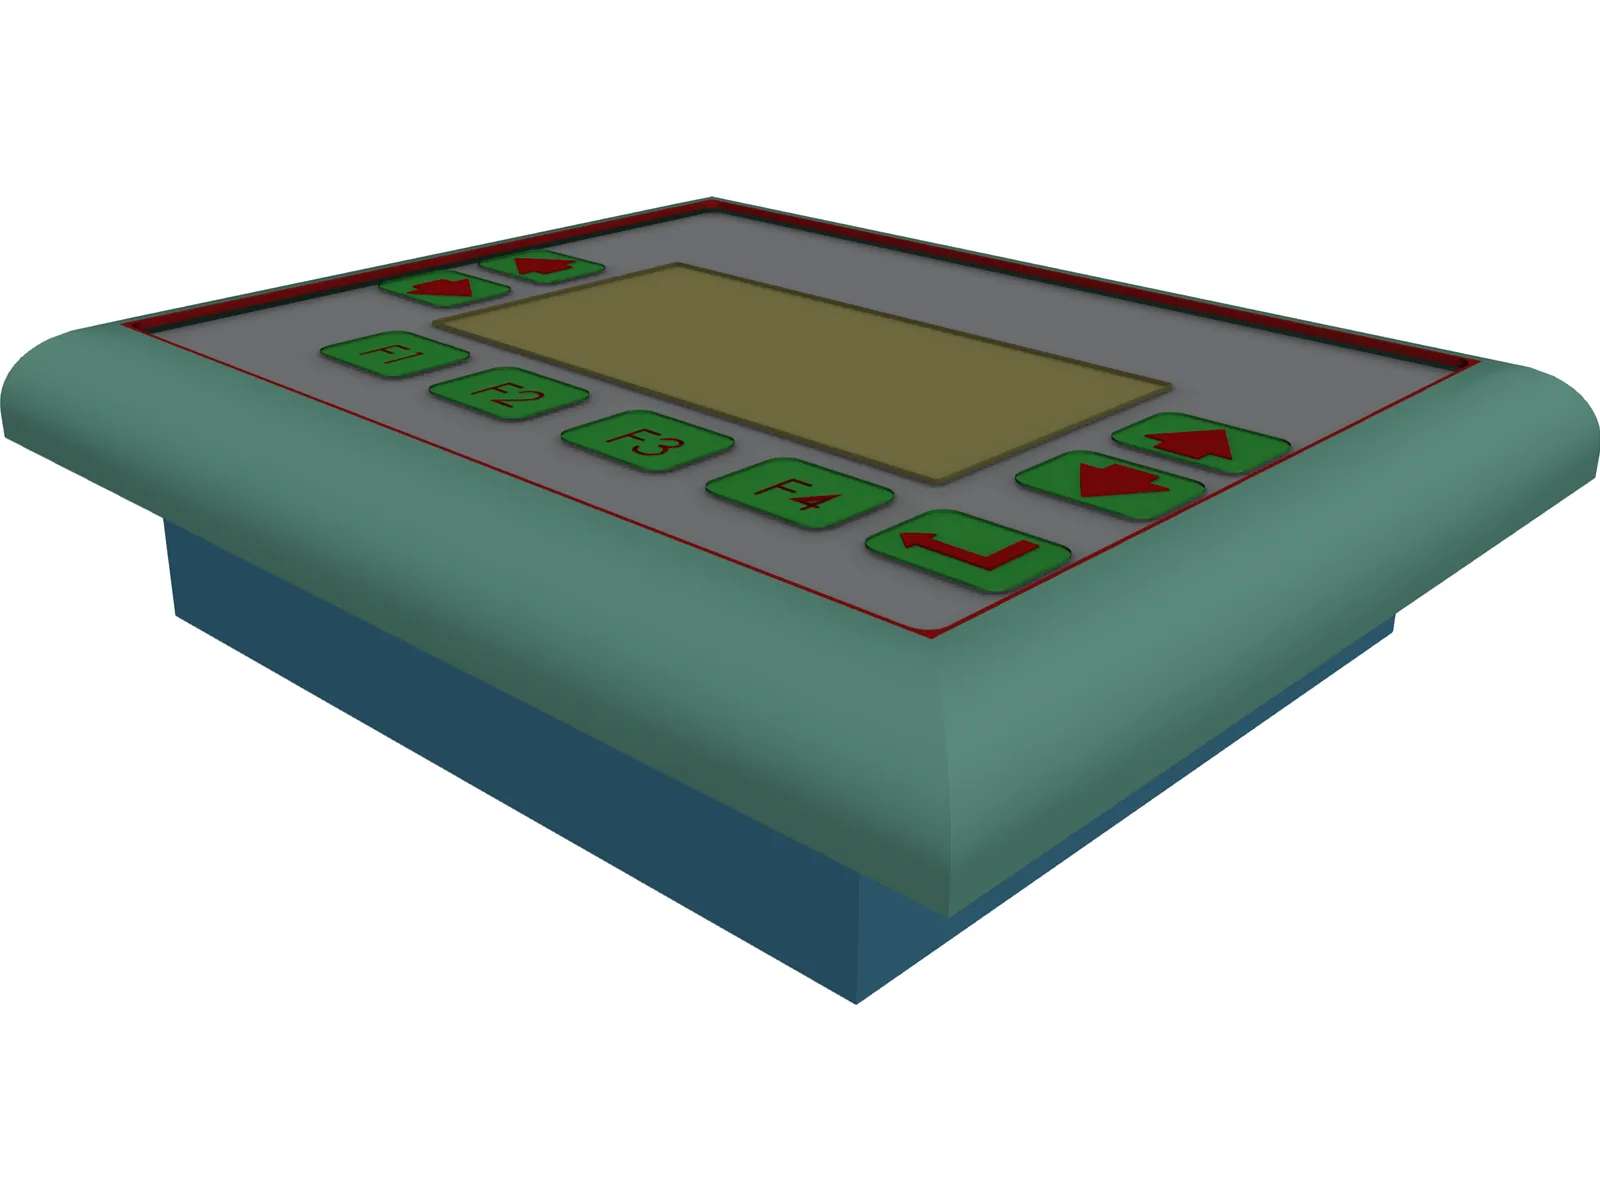 Control Panel 3D Model